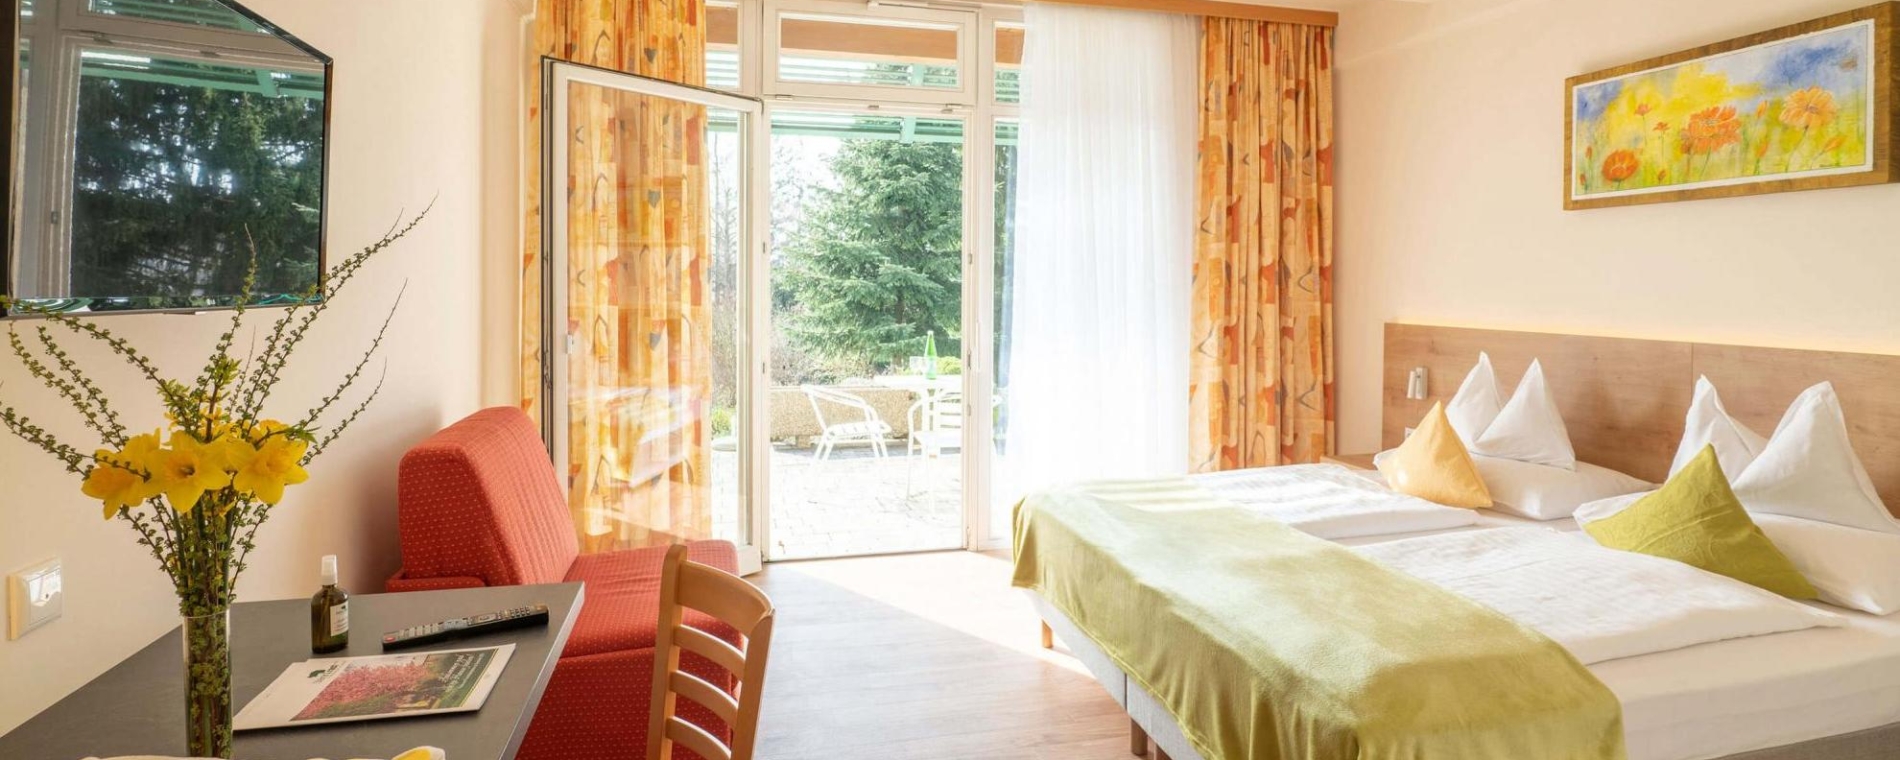 Zimmer buchen im Hotel Steirerrast Kaindorf bei Hartberg